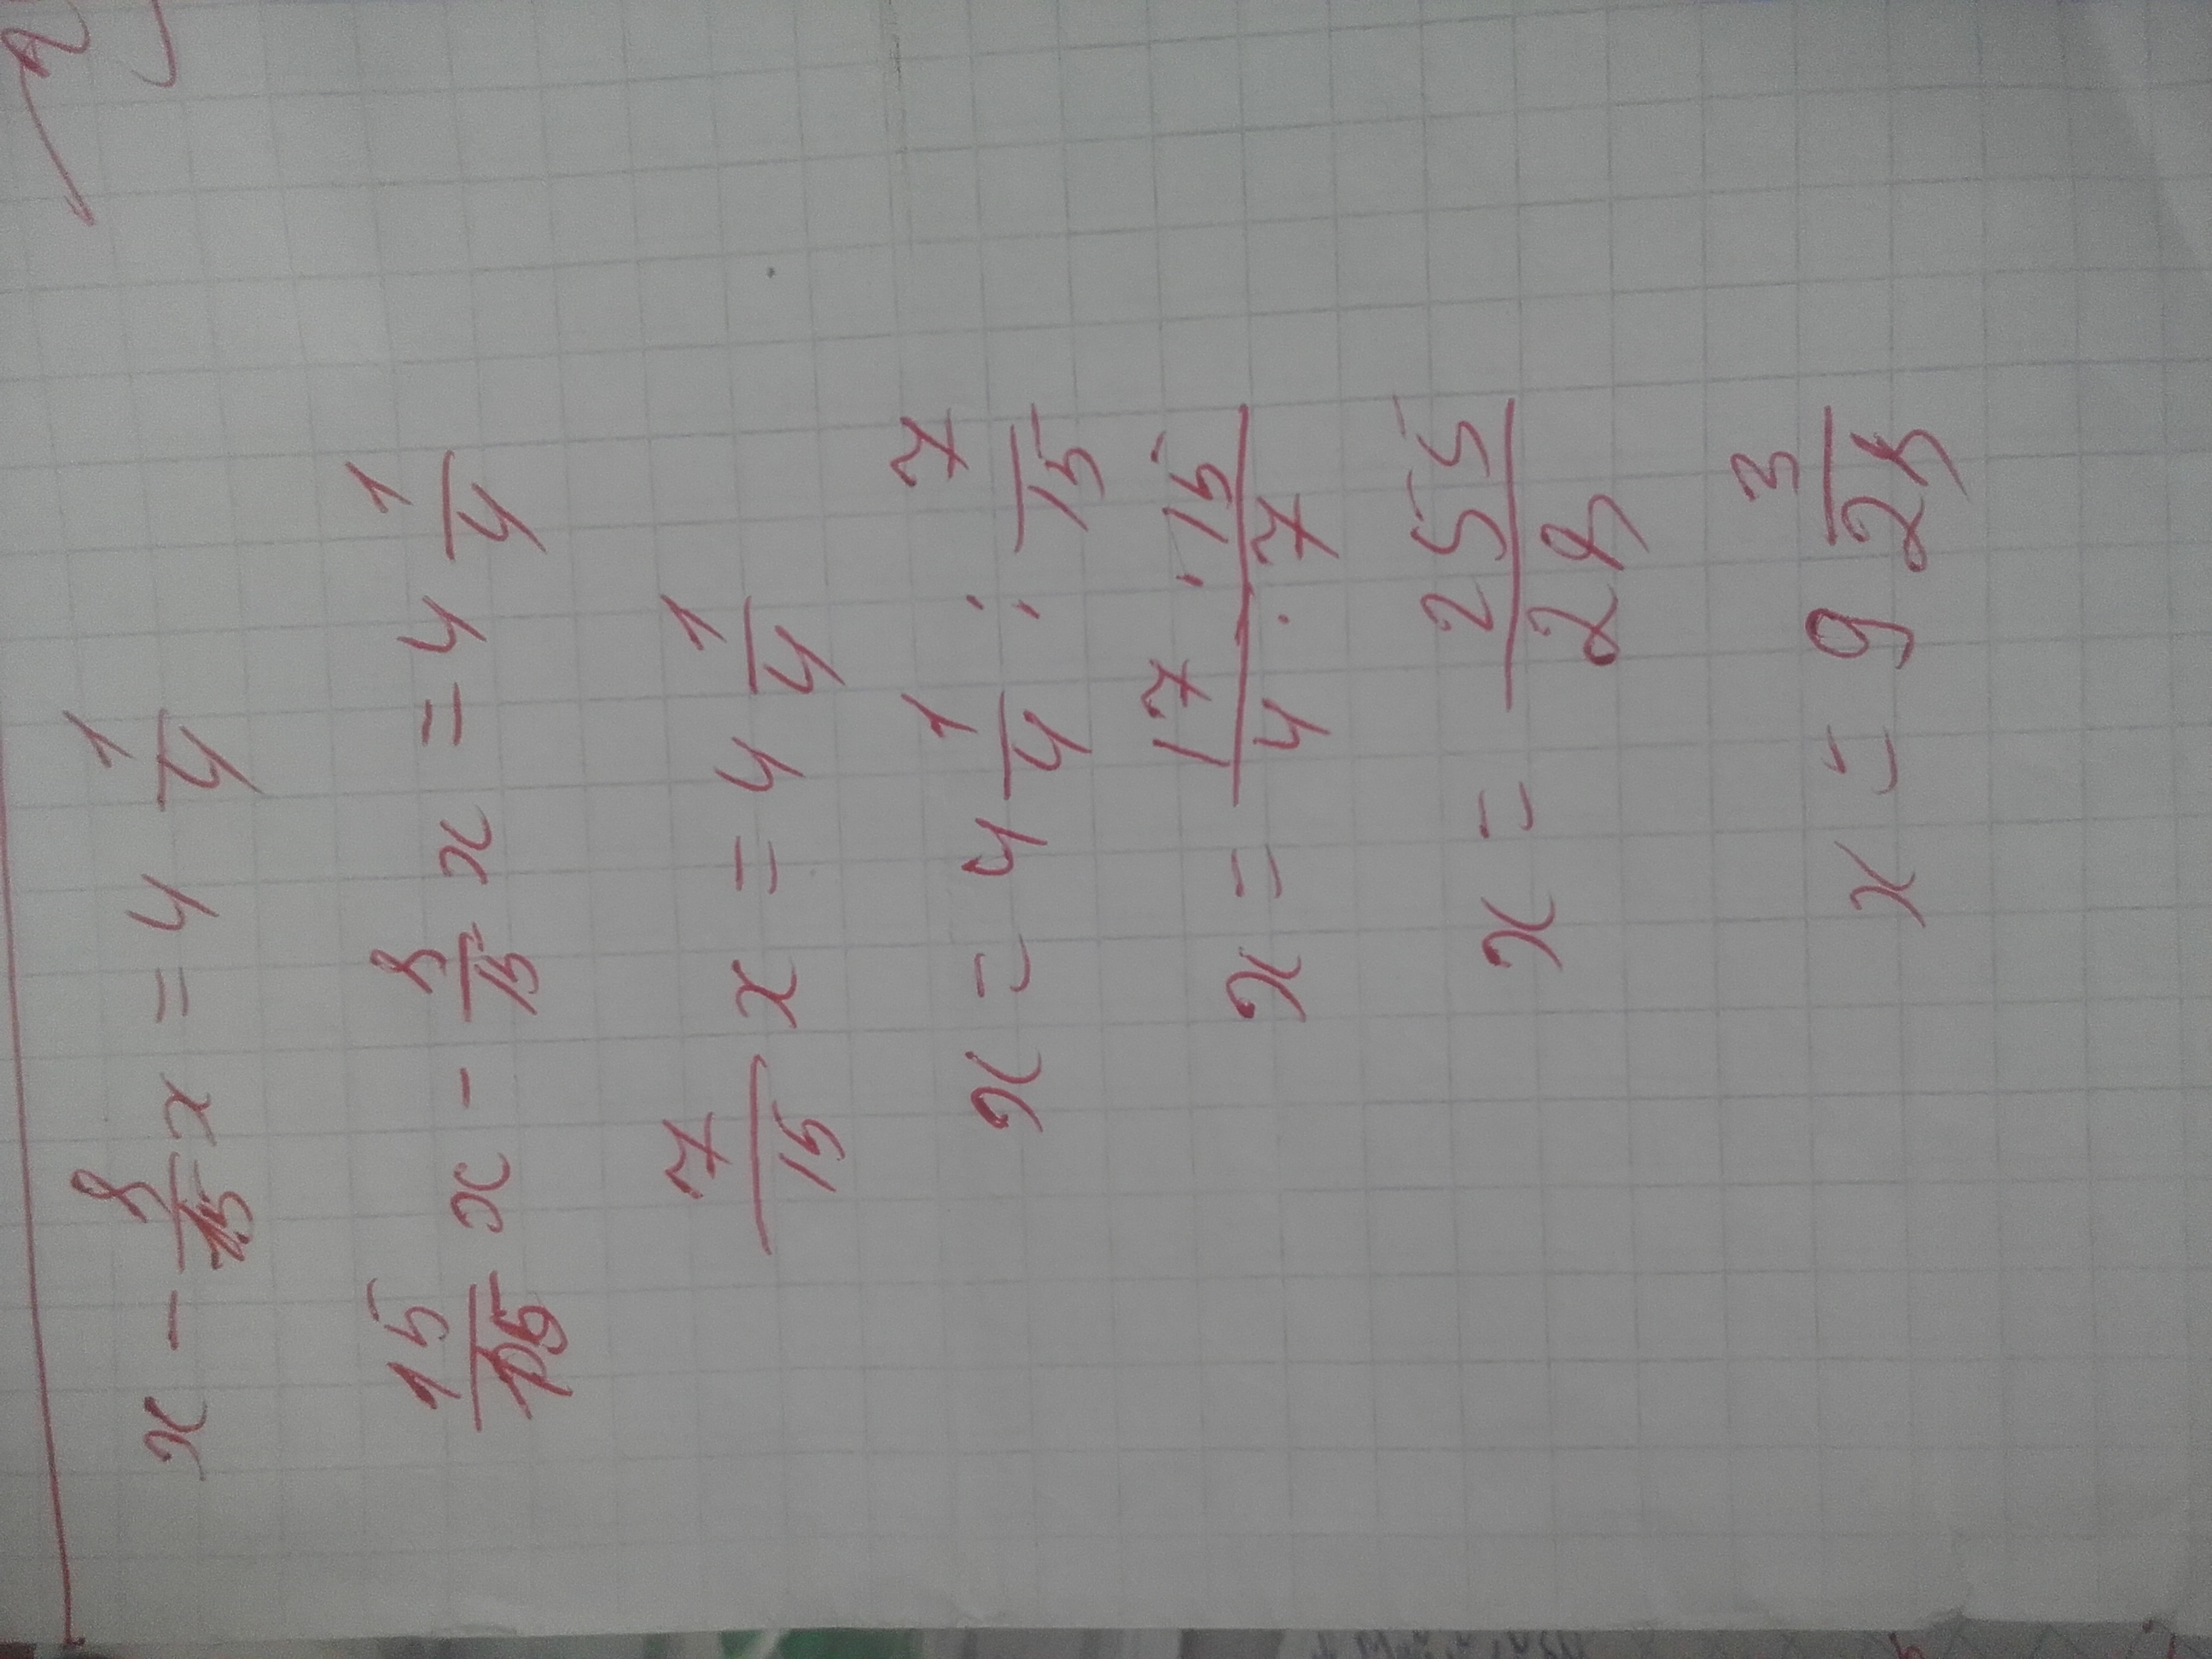 Y 12 7x 3 1 3. Решение уравнения 7x +1=25-x. 2x-7/22x+4 -1/4. 15x+12 9x-6 решить уравнение. Решить уравнение 5x +y=7.